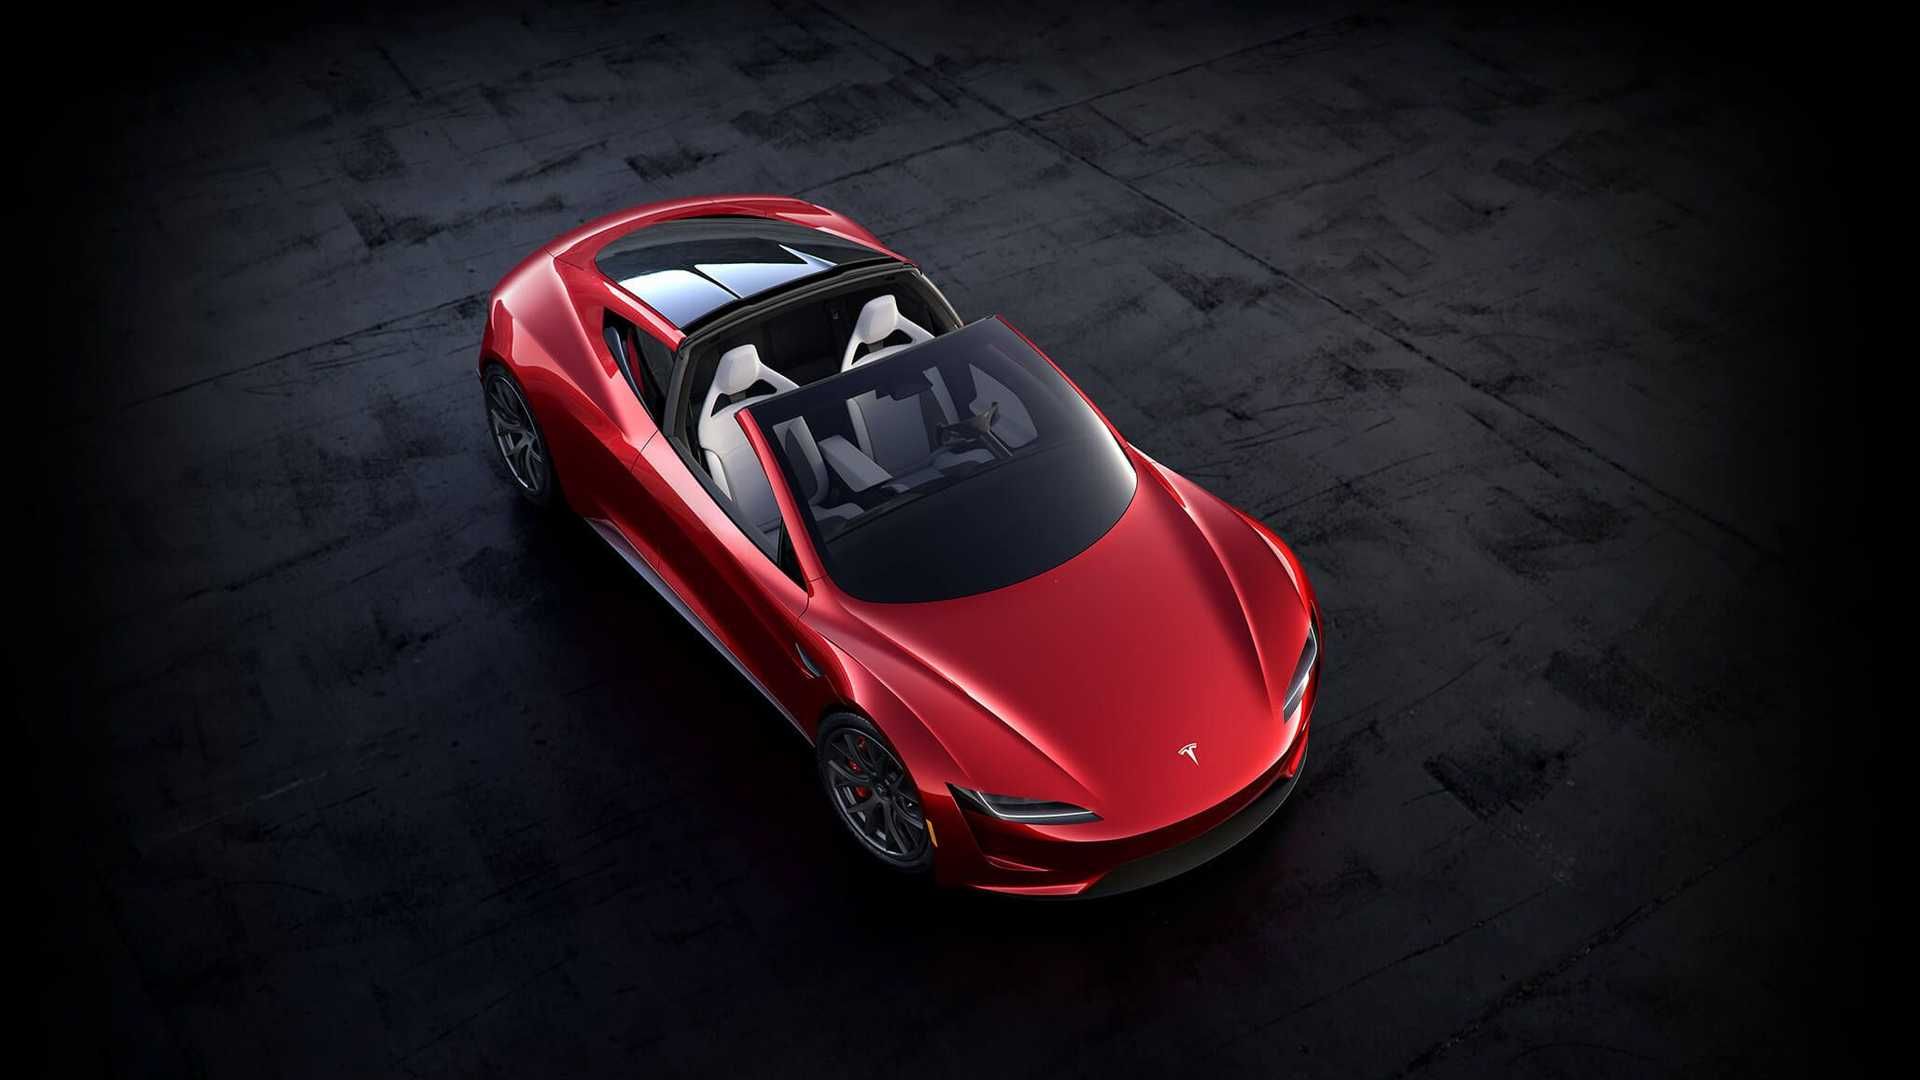 نمای بالا خودروی الکتریکی تسلا رودستر / Tesla Roadster قرمز رنگ